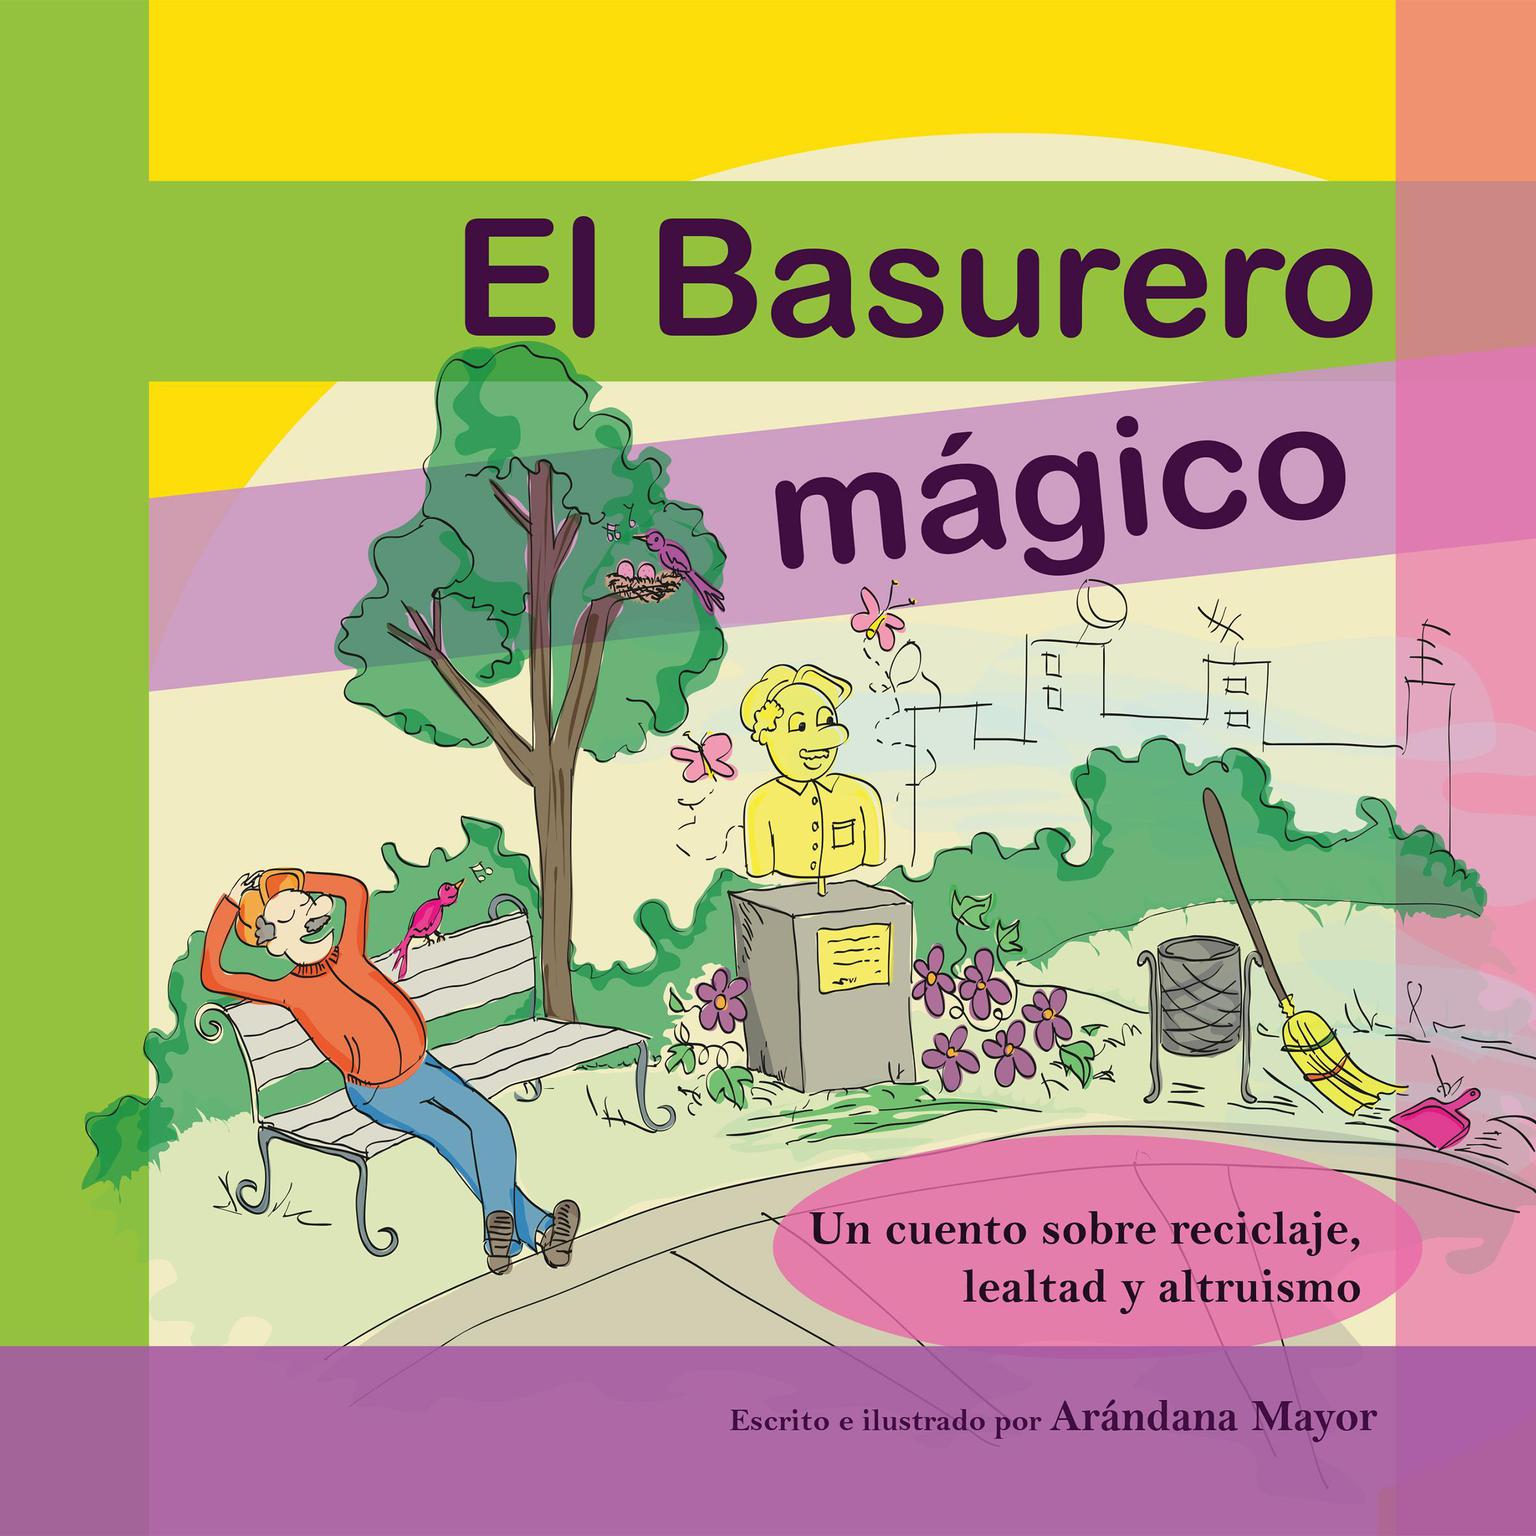 El Basurero Magico: Un cuento ilustrado sobre ecologia, reciclaje, lealtad y altruismo Audiobook, by Arandana Mayor